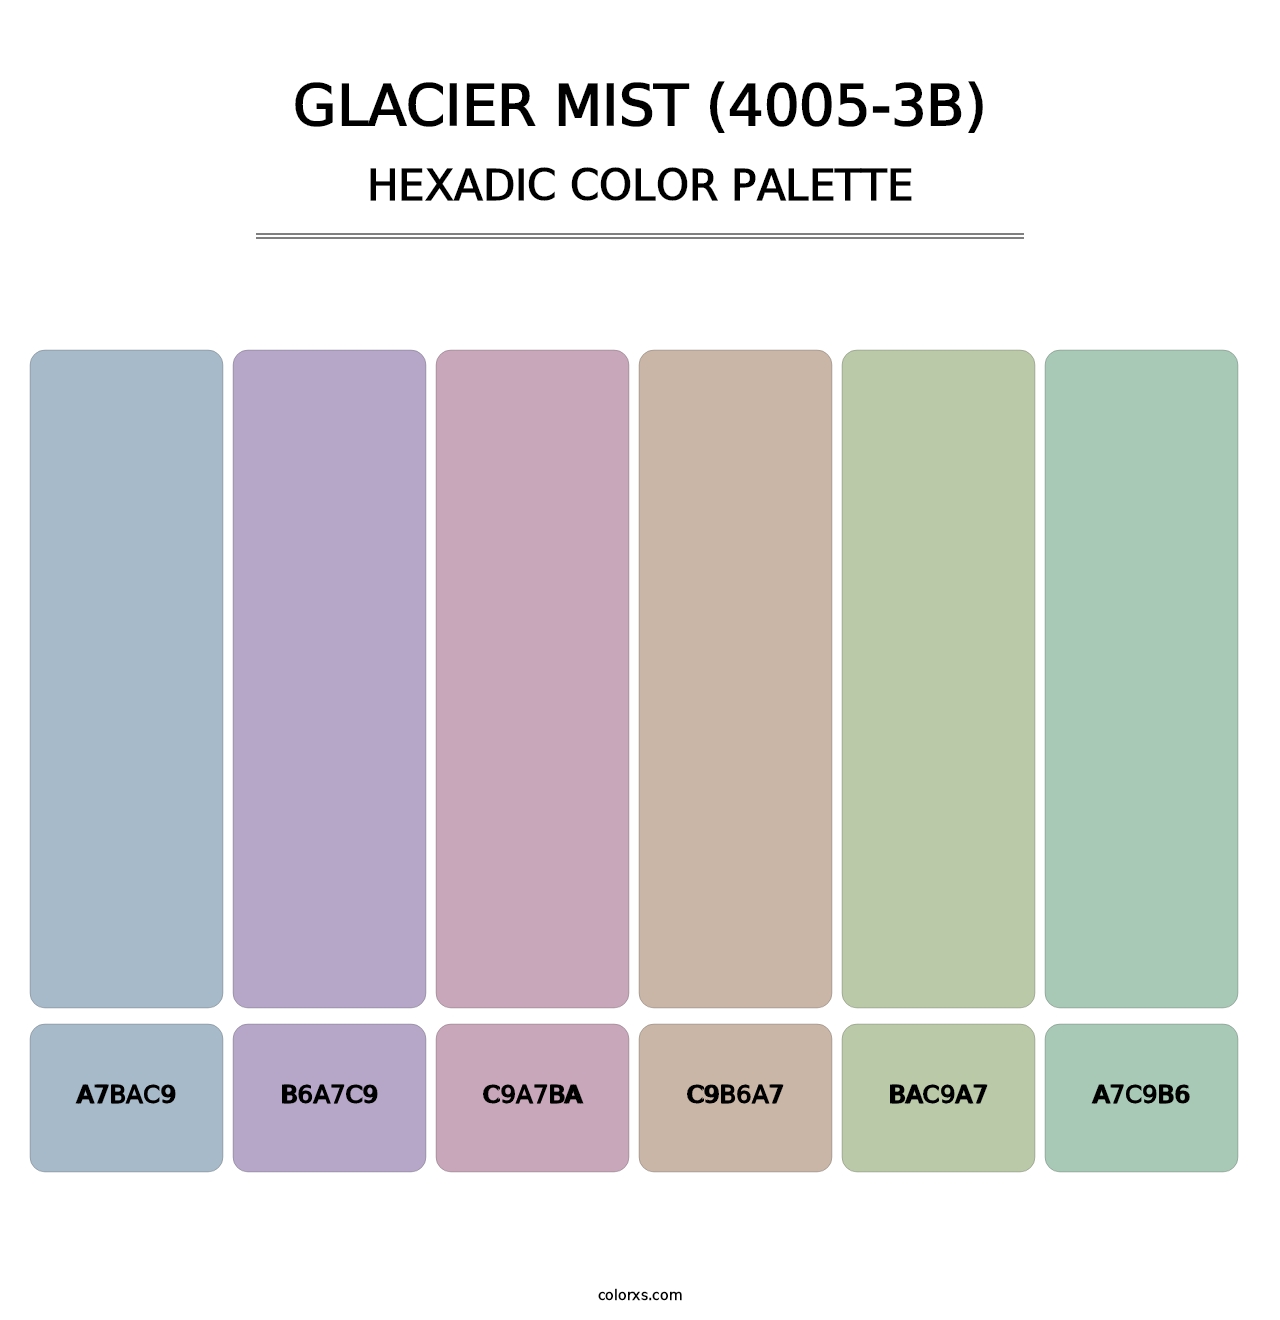 Glacier Mist (4005-3B) - Hexadic Color Palette